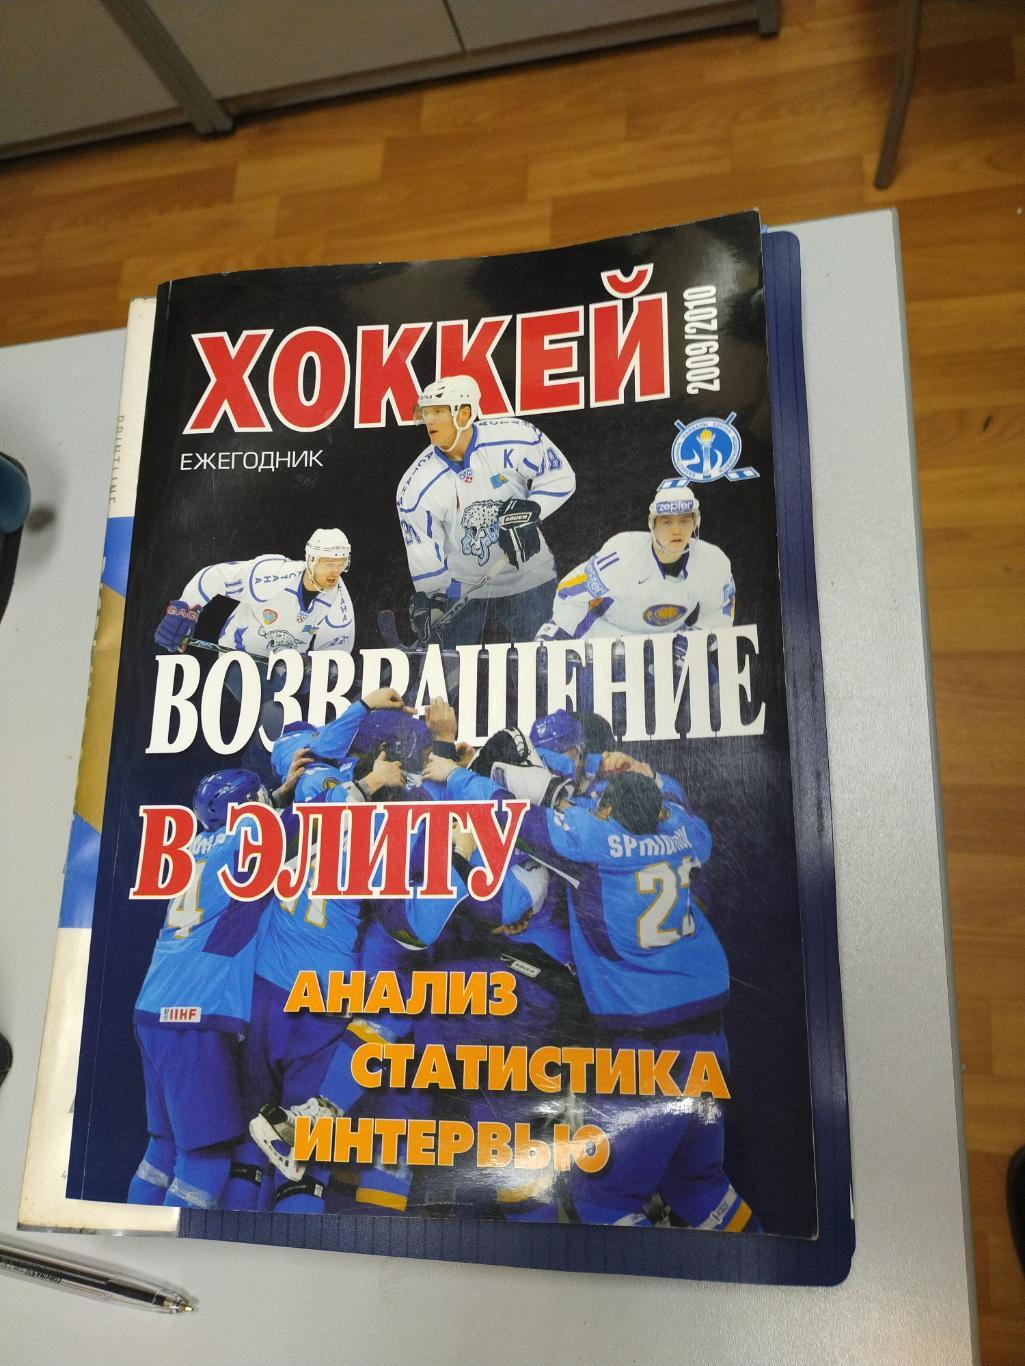 Ежегодник хоккей 2009/10. Казахстан